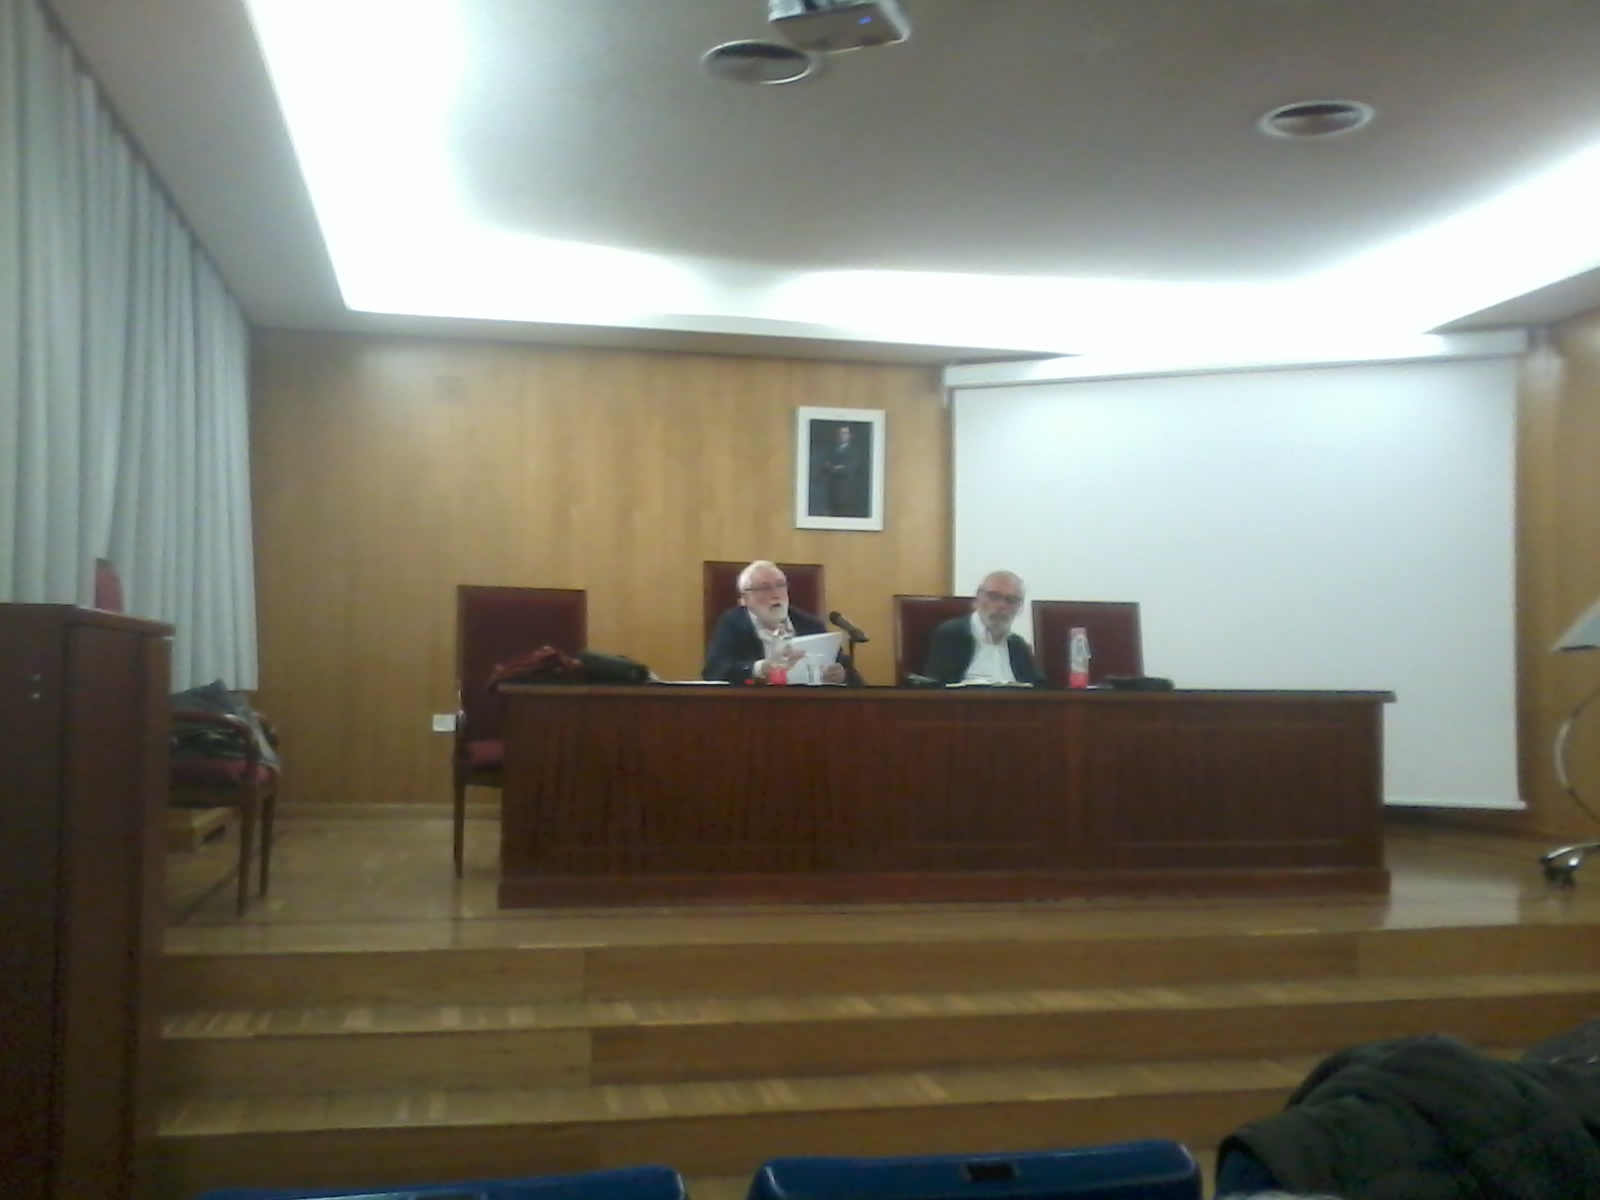 Imagen en la que se pueden ver los profesores Ildefonso Camacho y Javier Elzo sentados durante el desarrollo de la conferencia